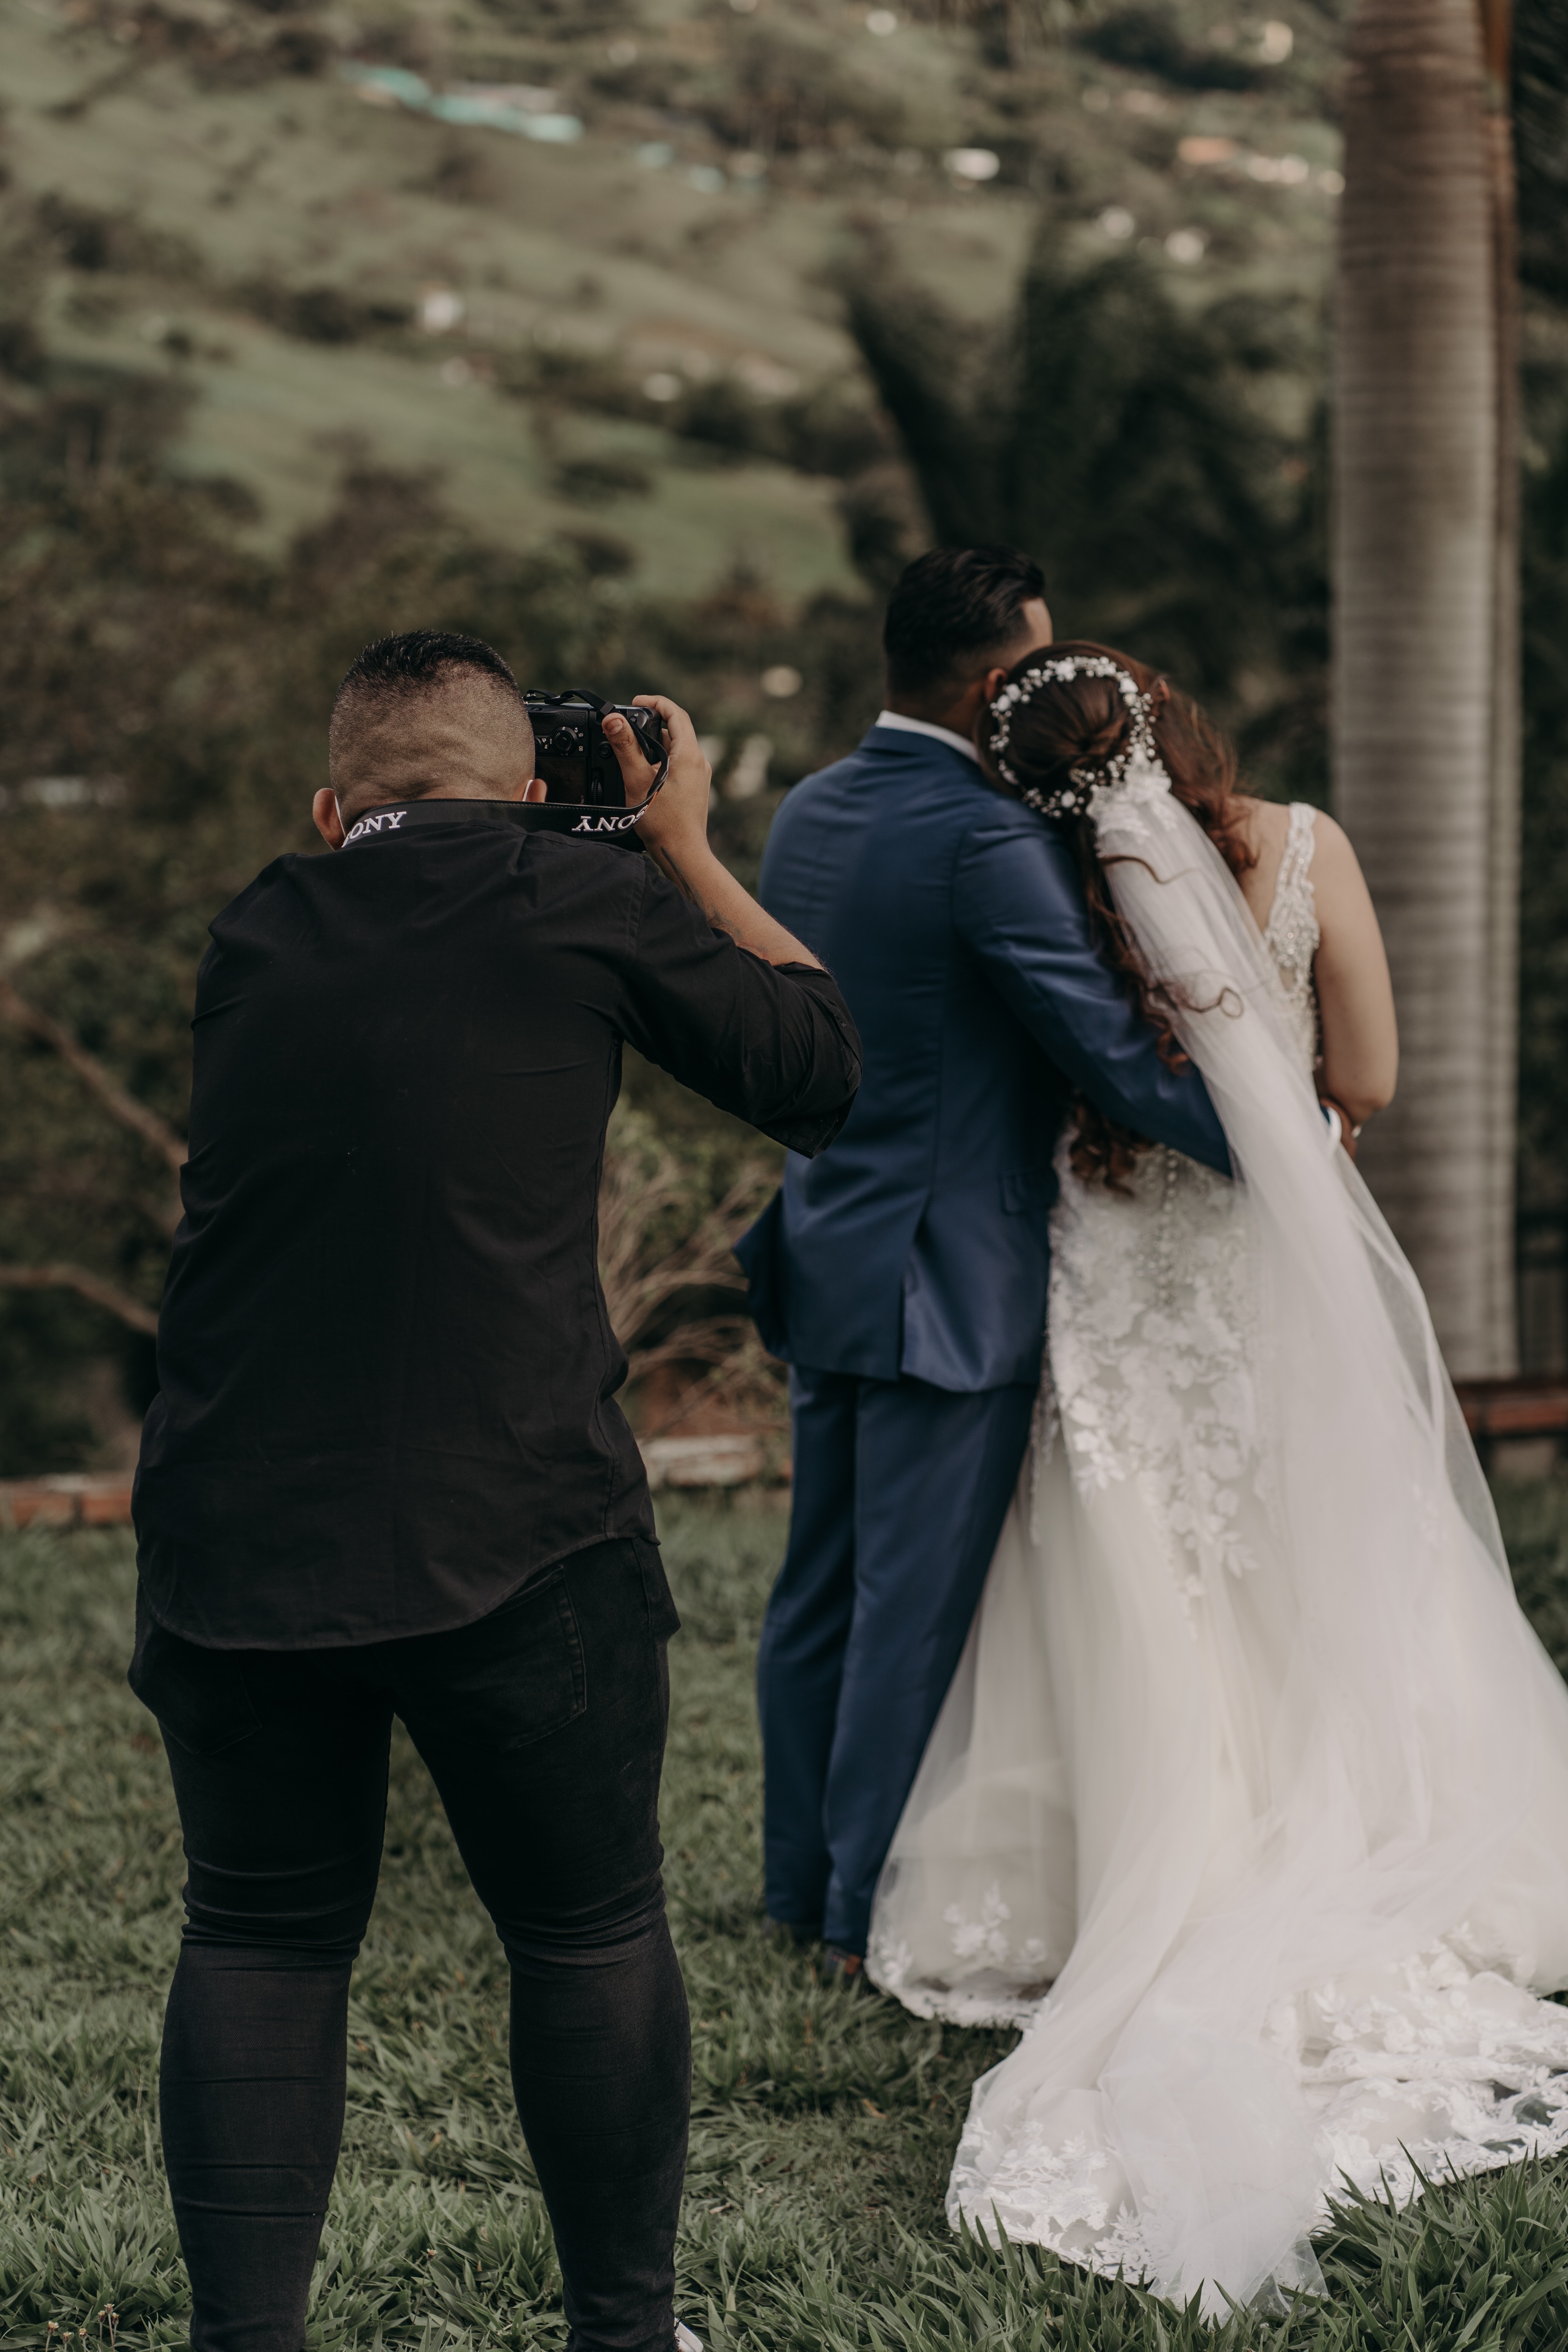 Comment trouver le photographe de son mariage ?